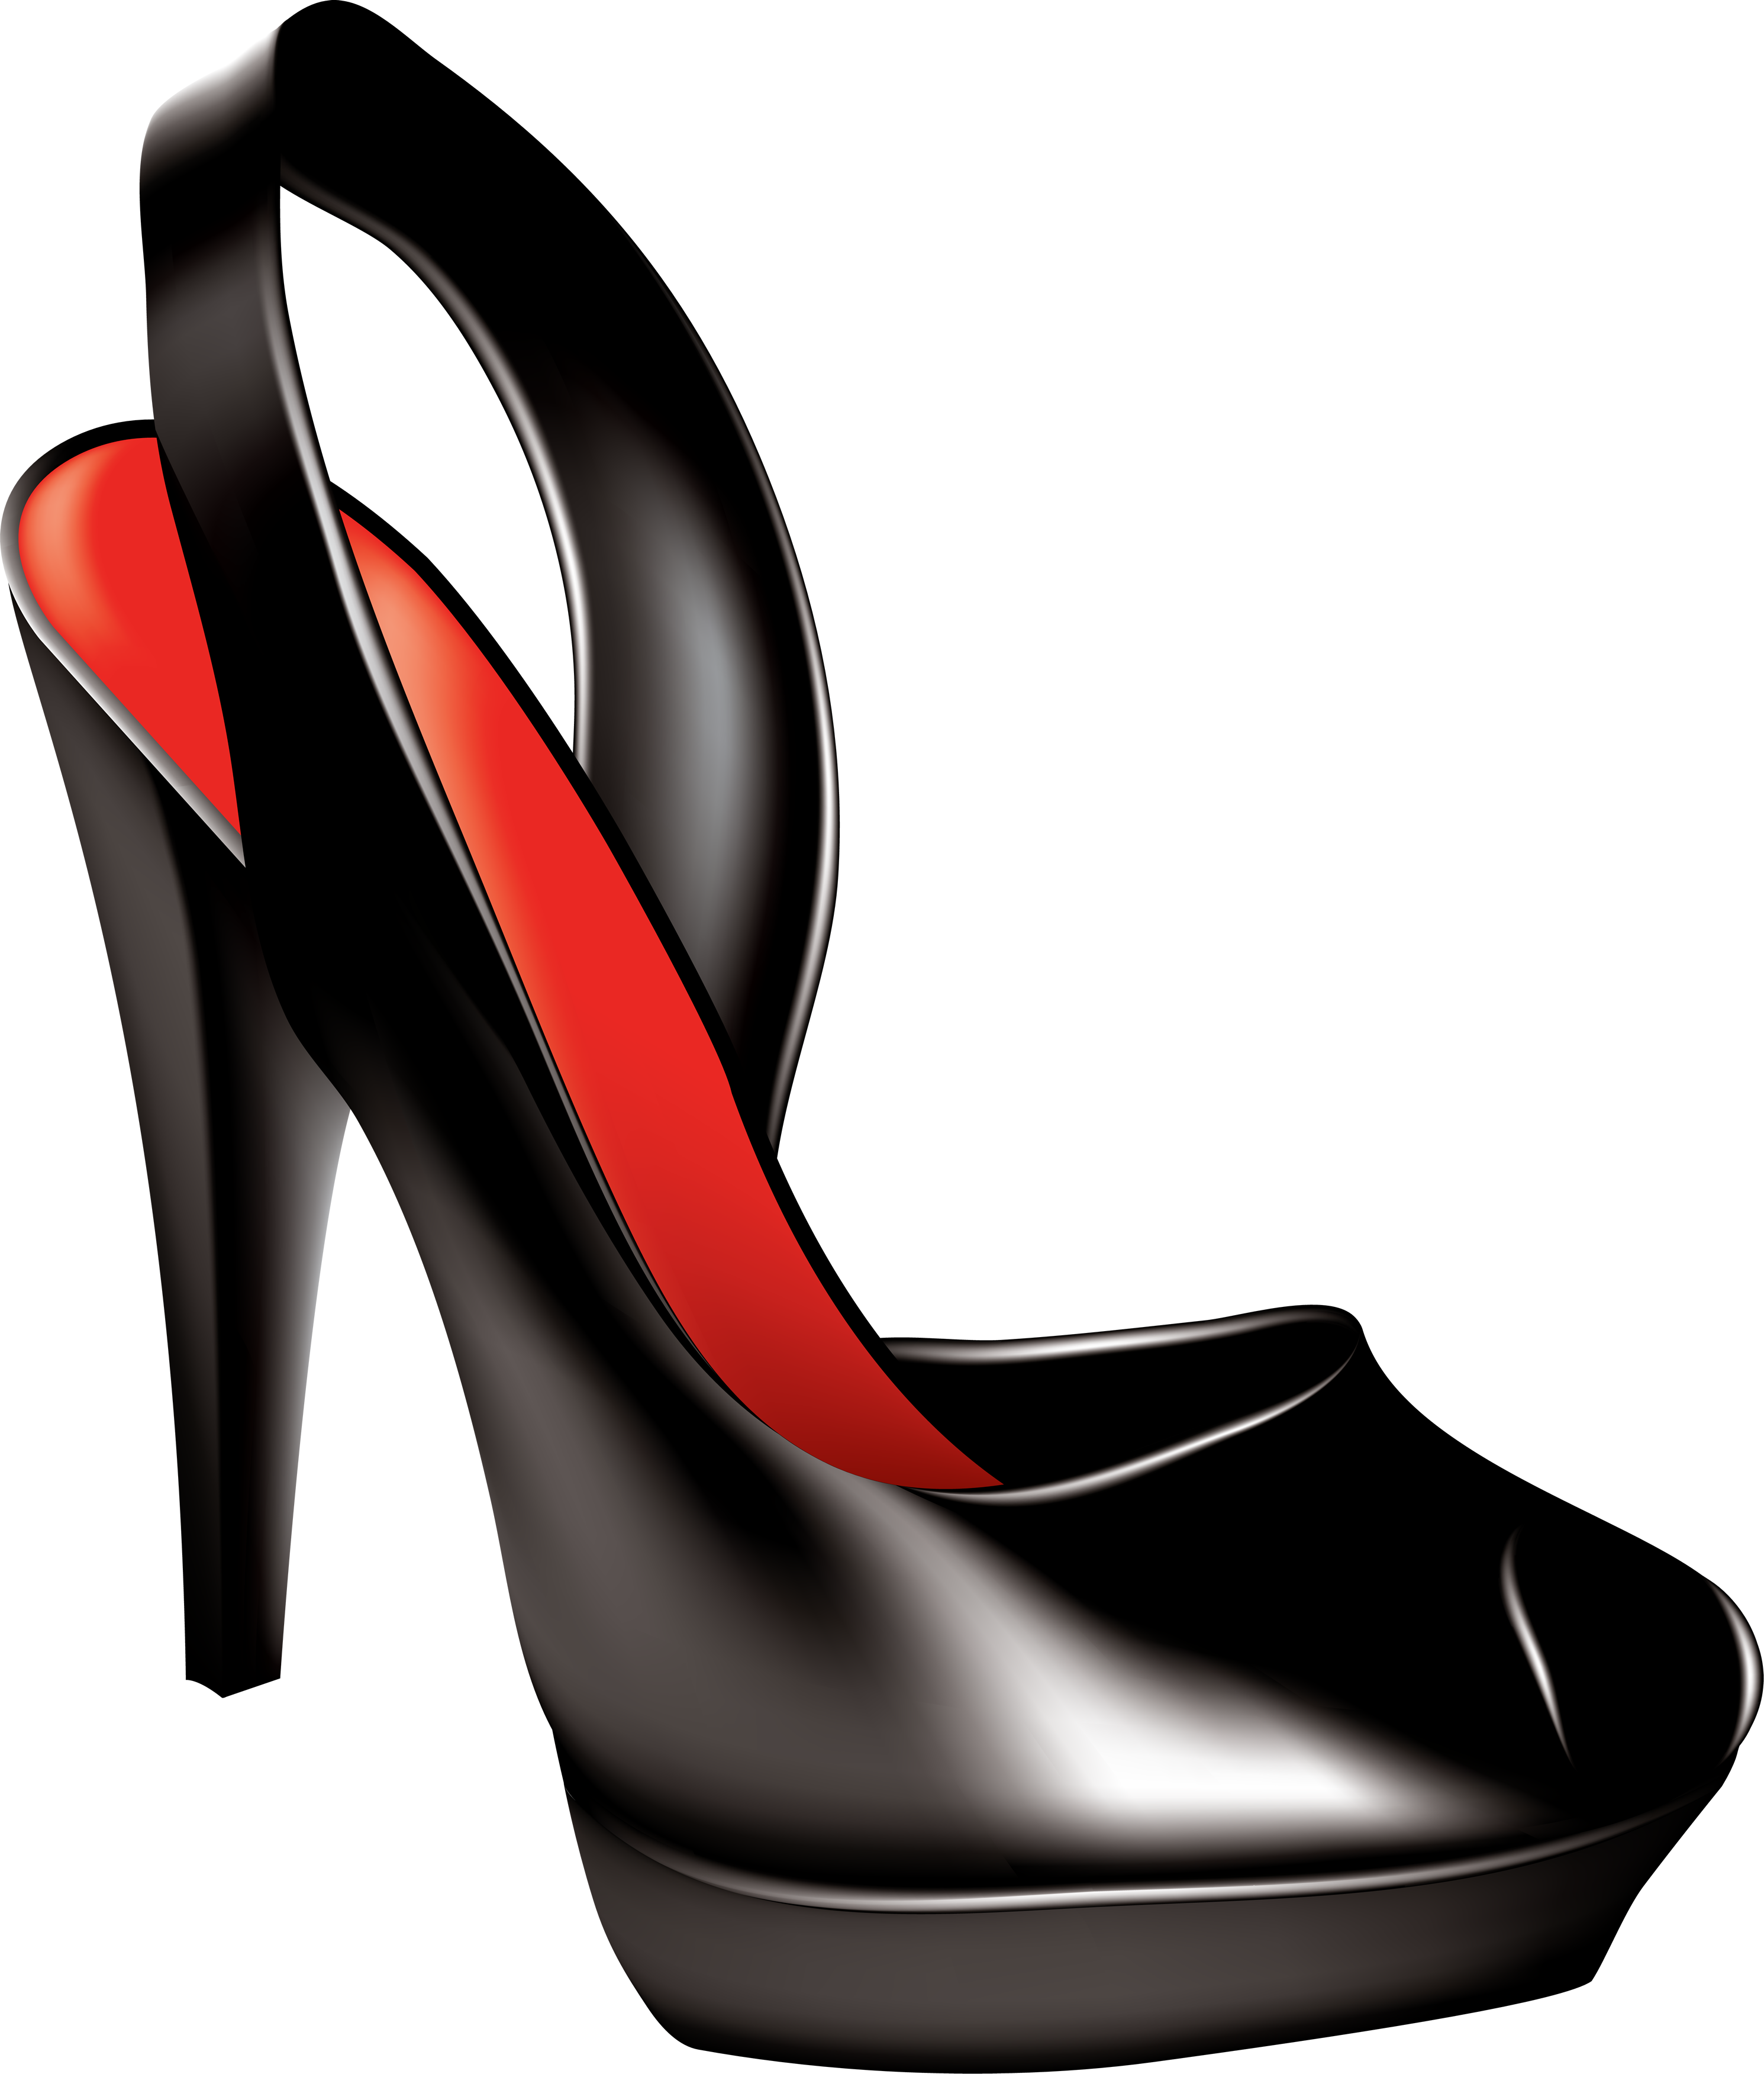 Red heel clipart - High Heel 